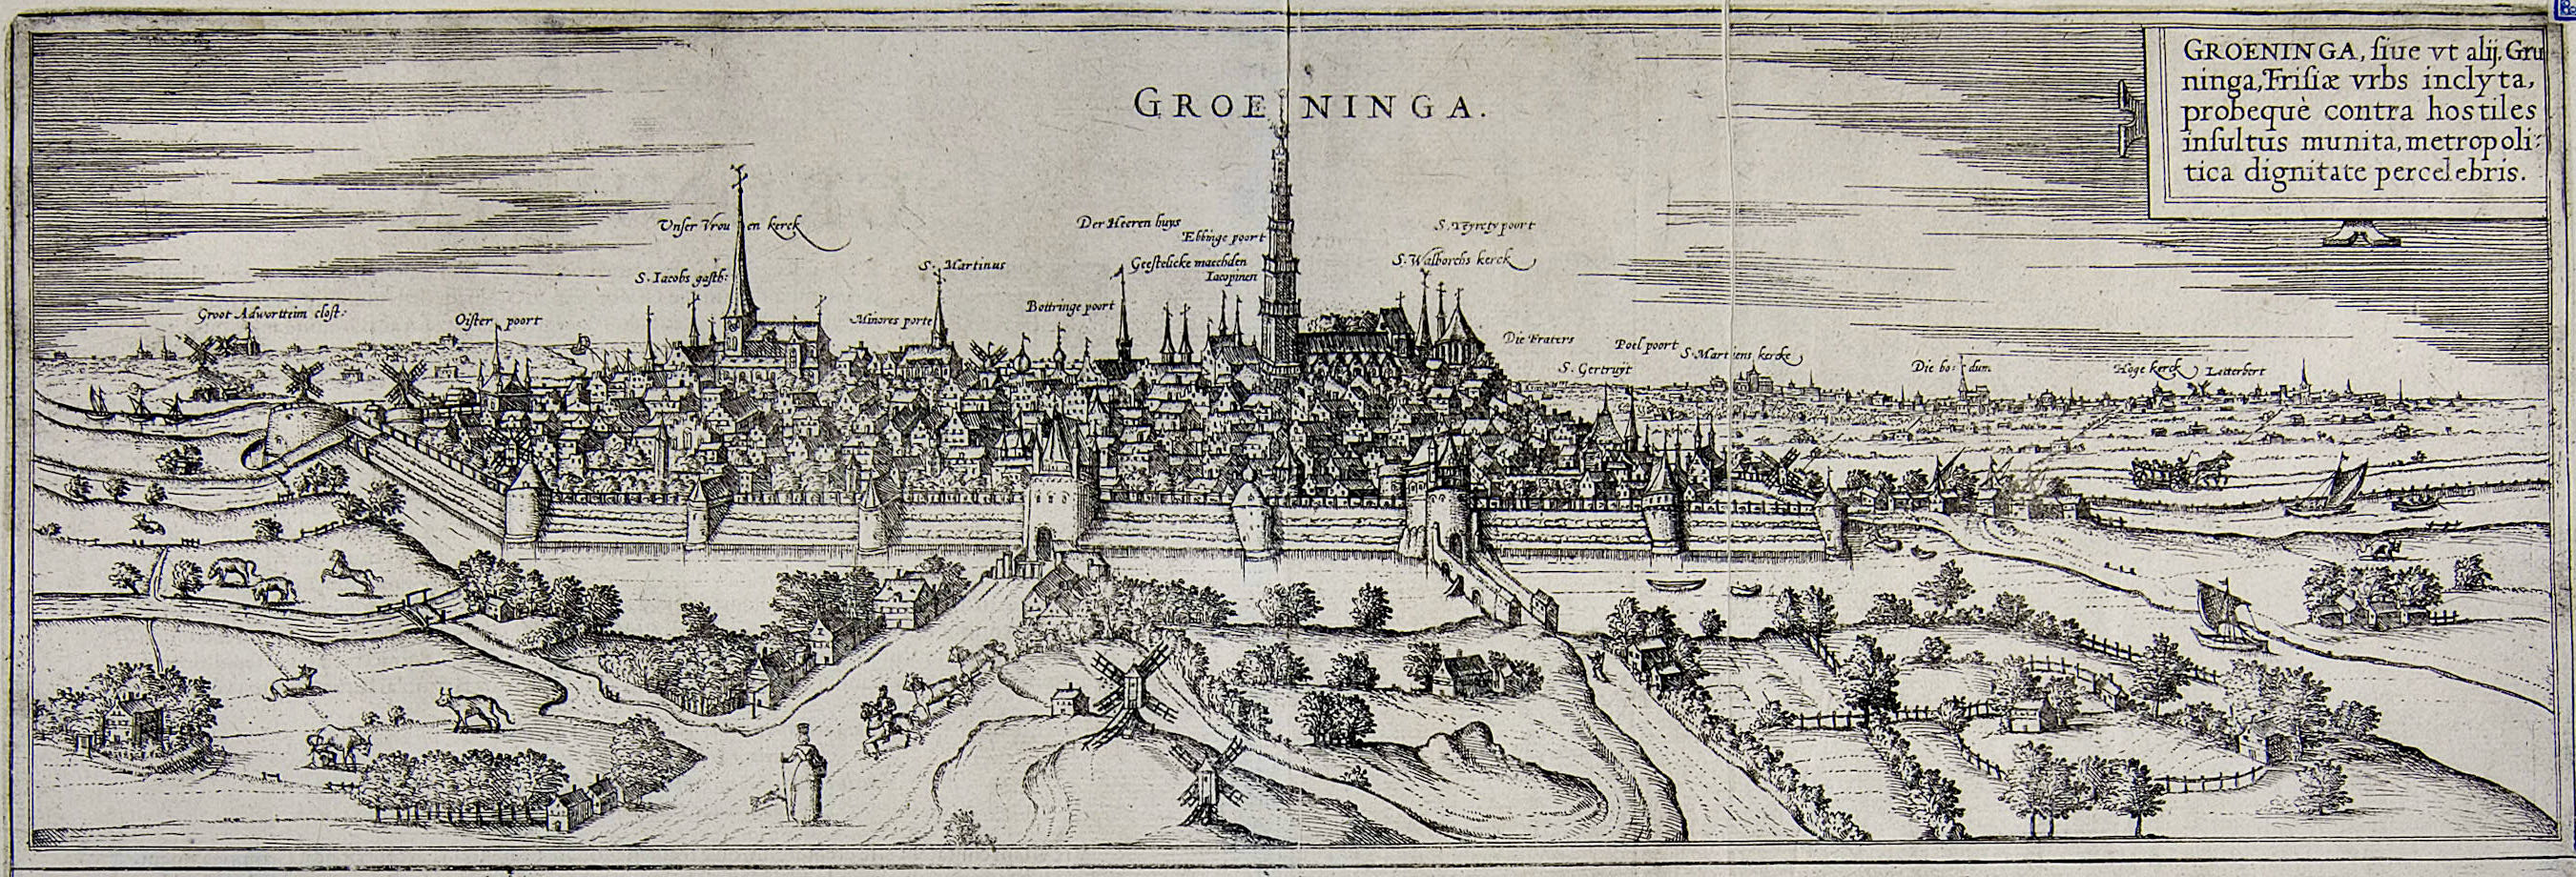 Groeninga sive, ut alii, Gruninga Frisiae urbs = Groeningen ofwel, zoals anderen (zeggen), Gruningen stad in Friesland. Gravure van Georg Braun, ca. 1576. UBG uklu 01-13-10